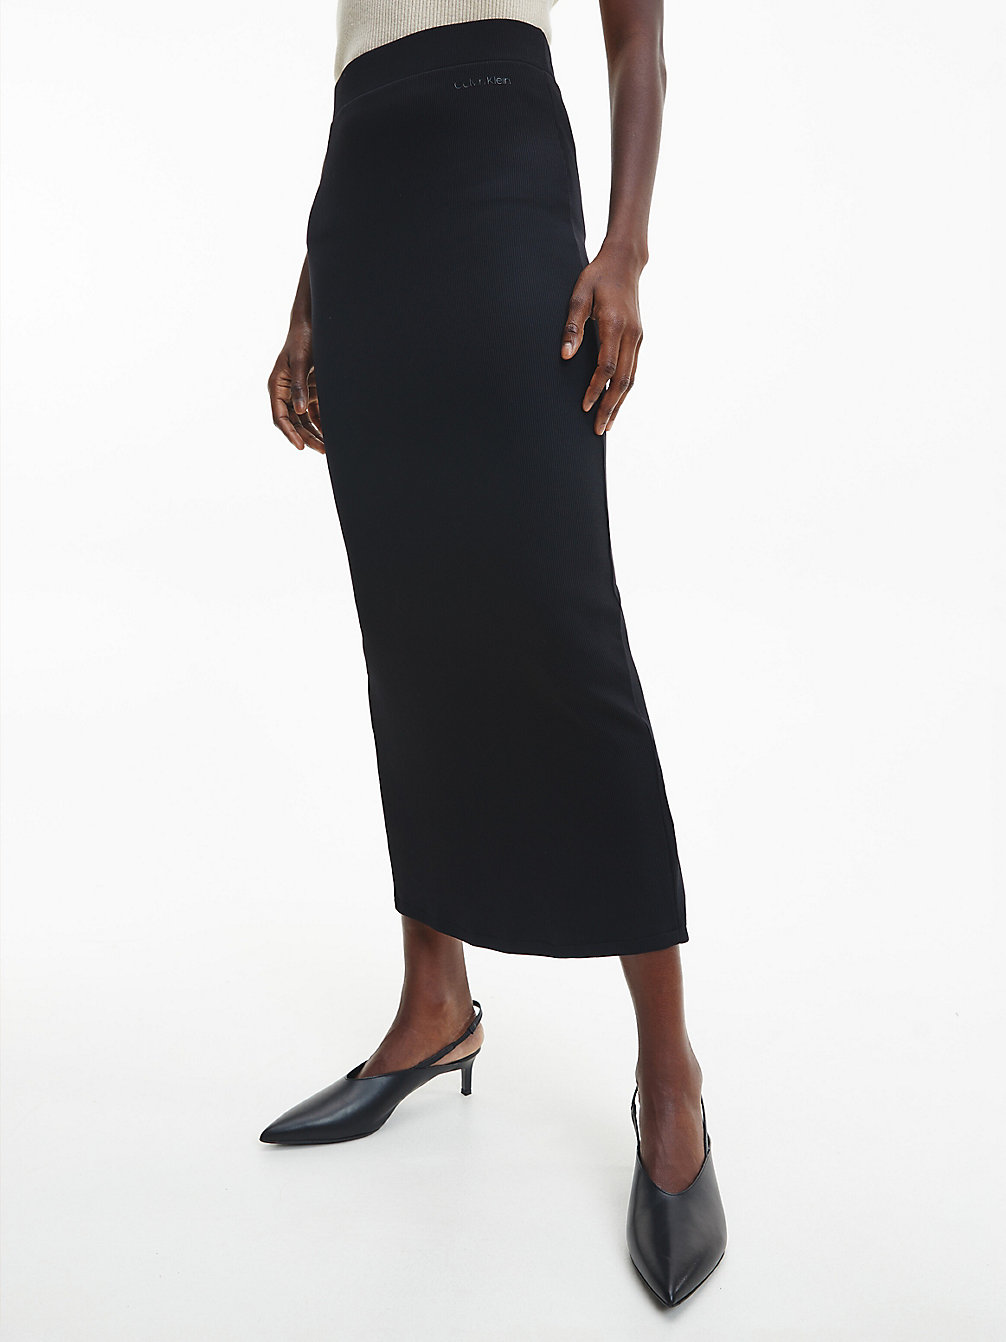 CK BLACK Jupe Longue Slim Moulante undefined femmes Calvin Klein